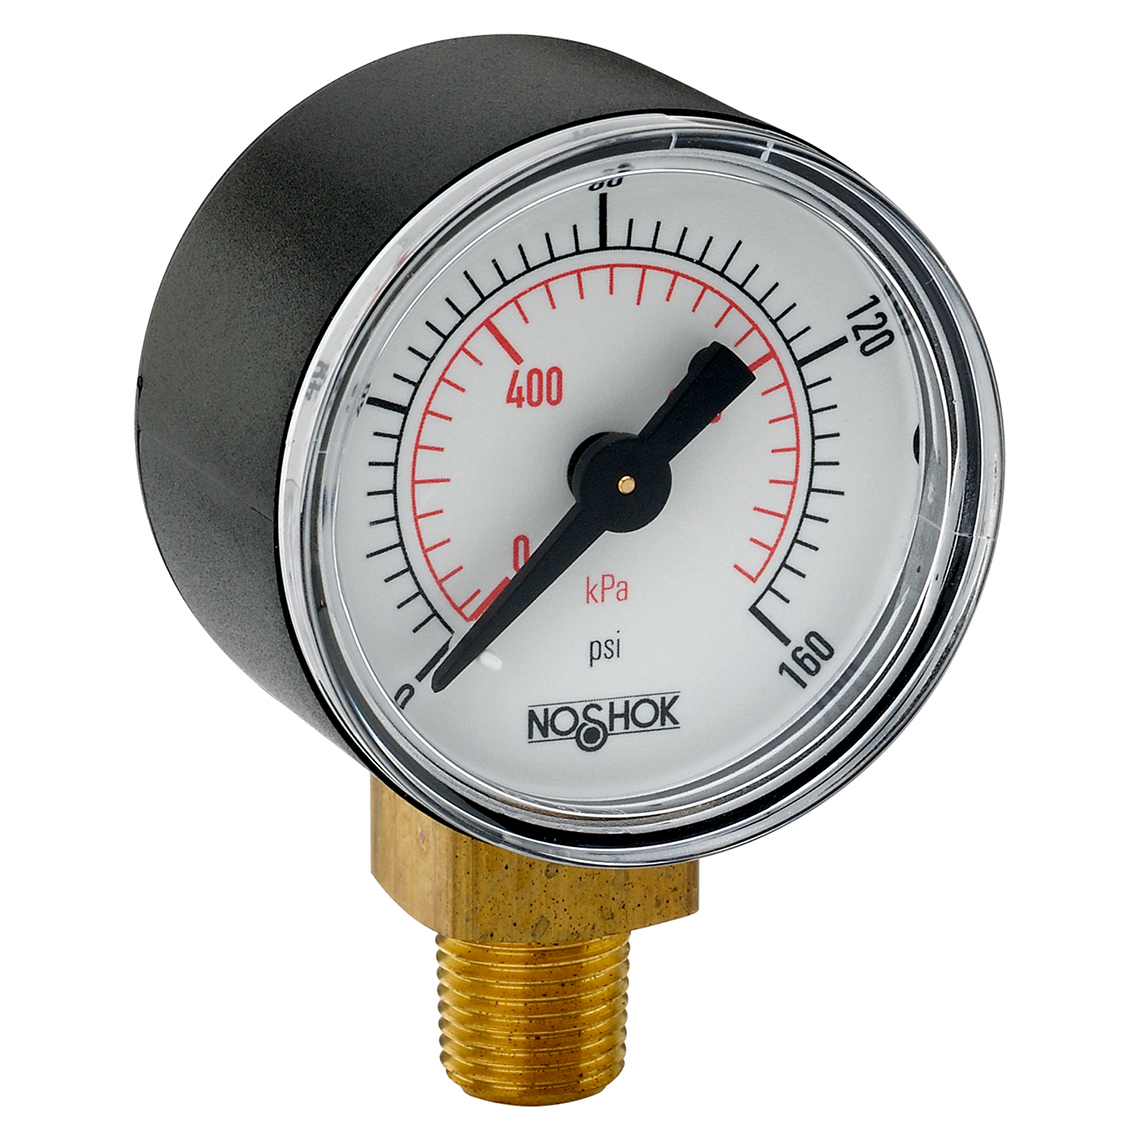 15-100-30-vac/kPa 100 Series ABS and Steel Case Dry Pressure Gauges